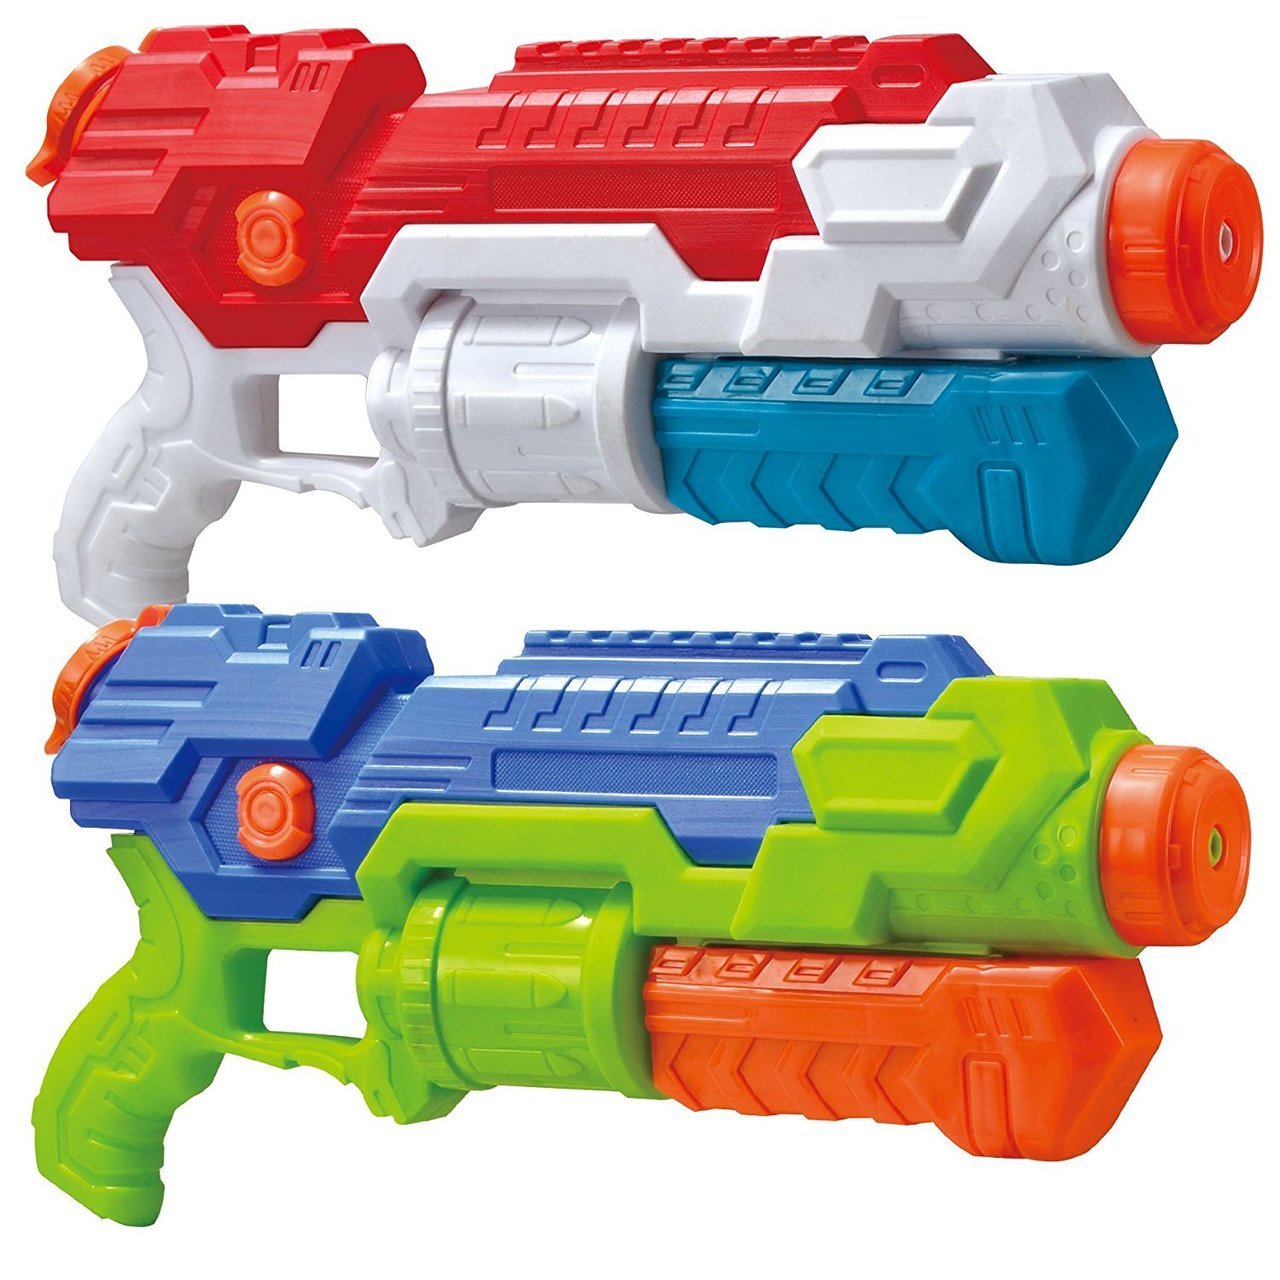 15.7” Super Water Blasters, 2 Pack